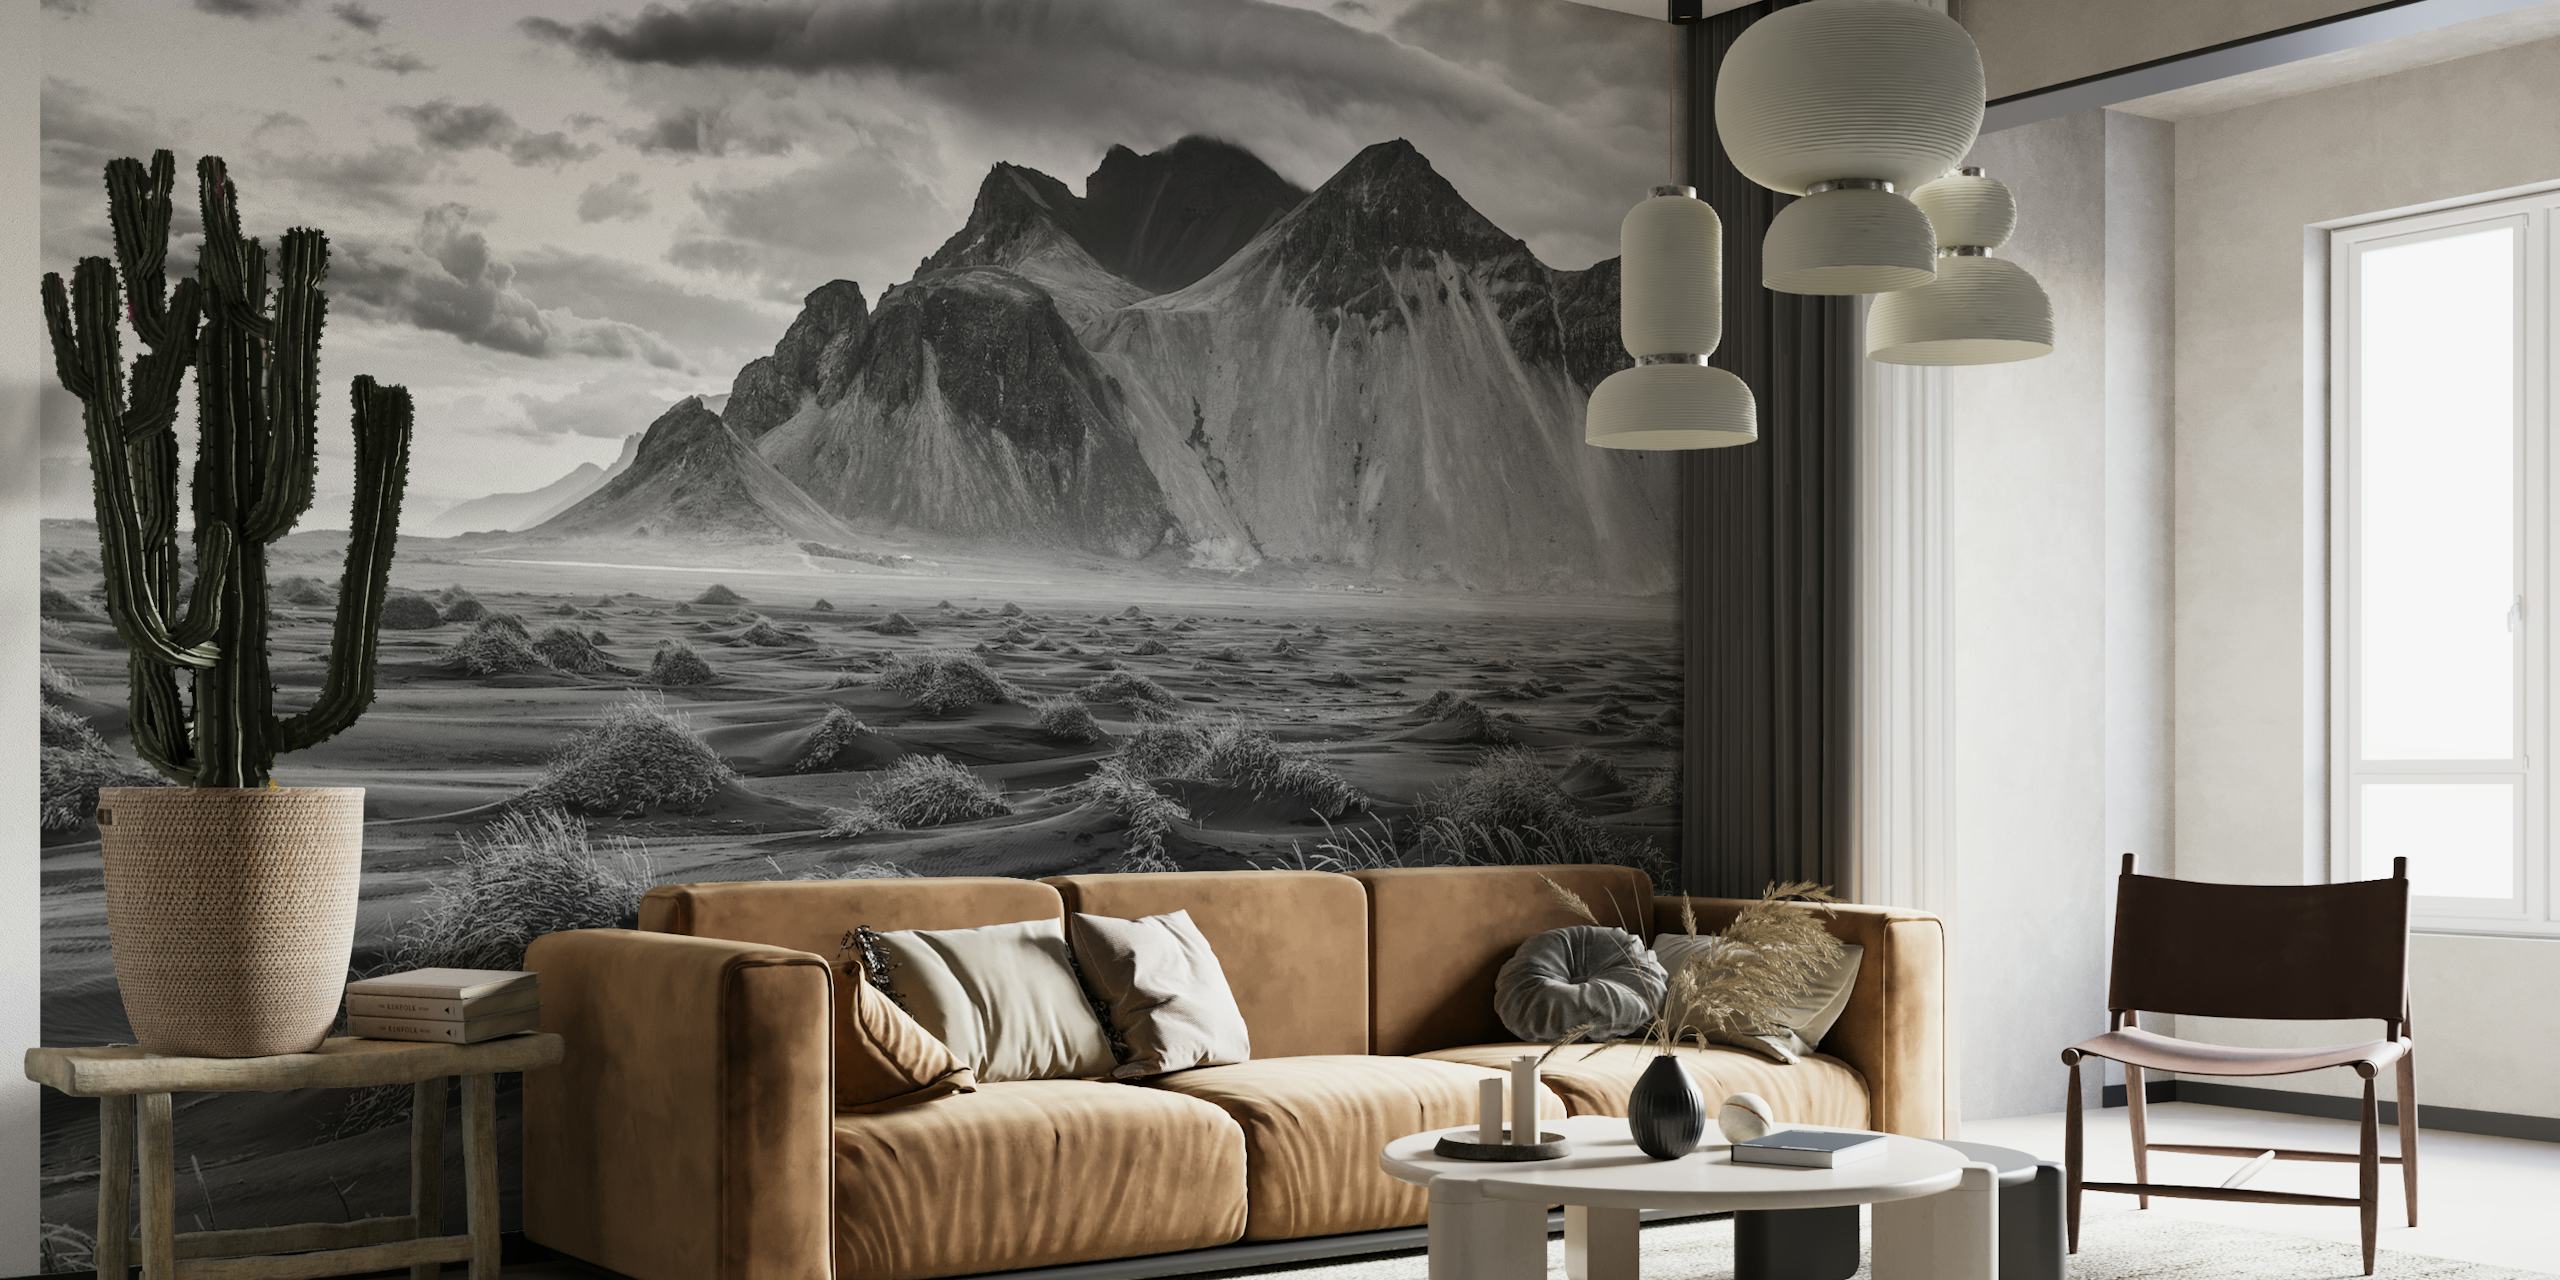 Stokksnes bergketen muurschildering met duinen in zwart-wit